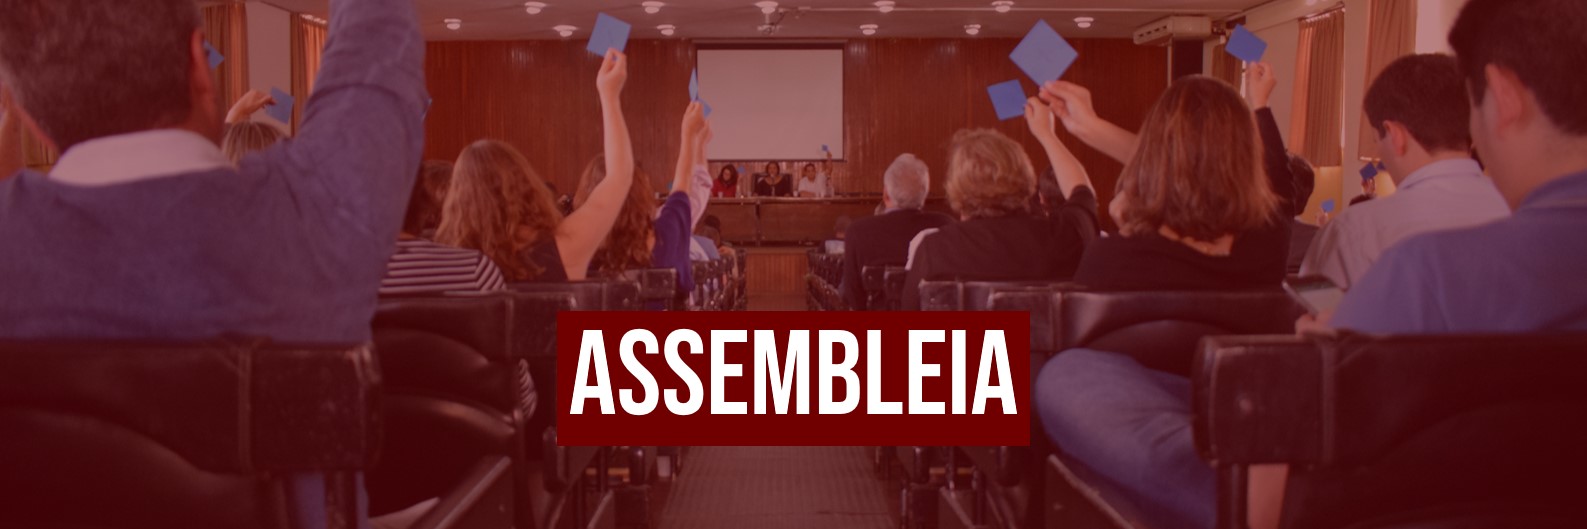 ASPUV convoca assembleias para sexta: confira as pautas